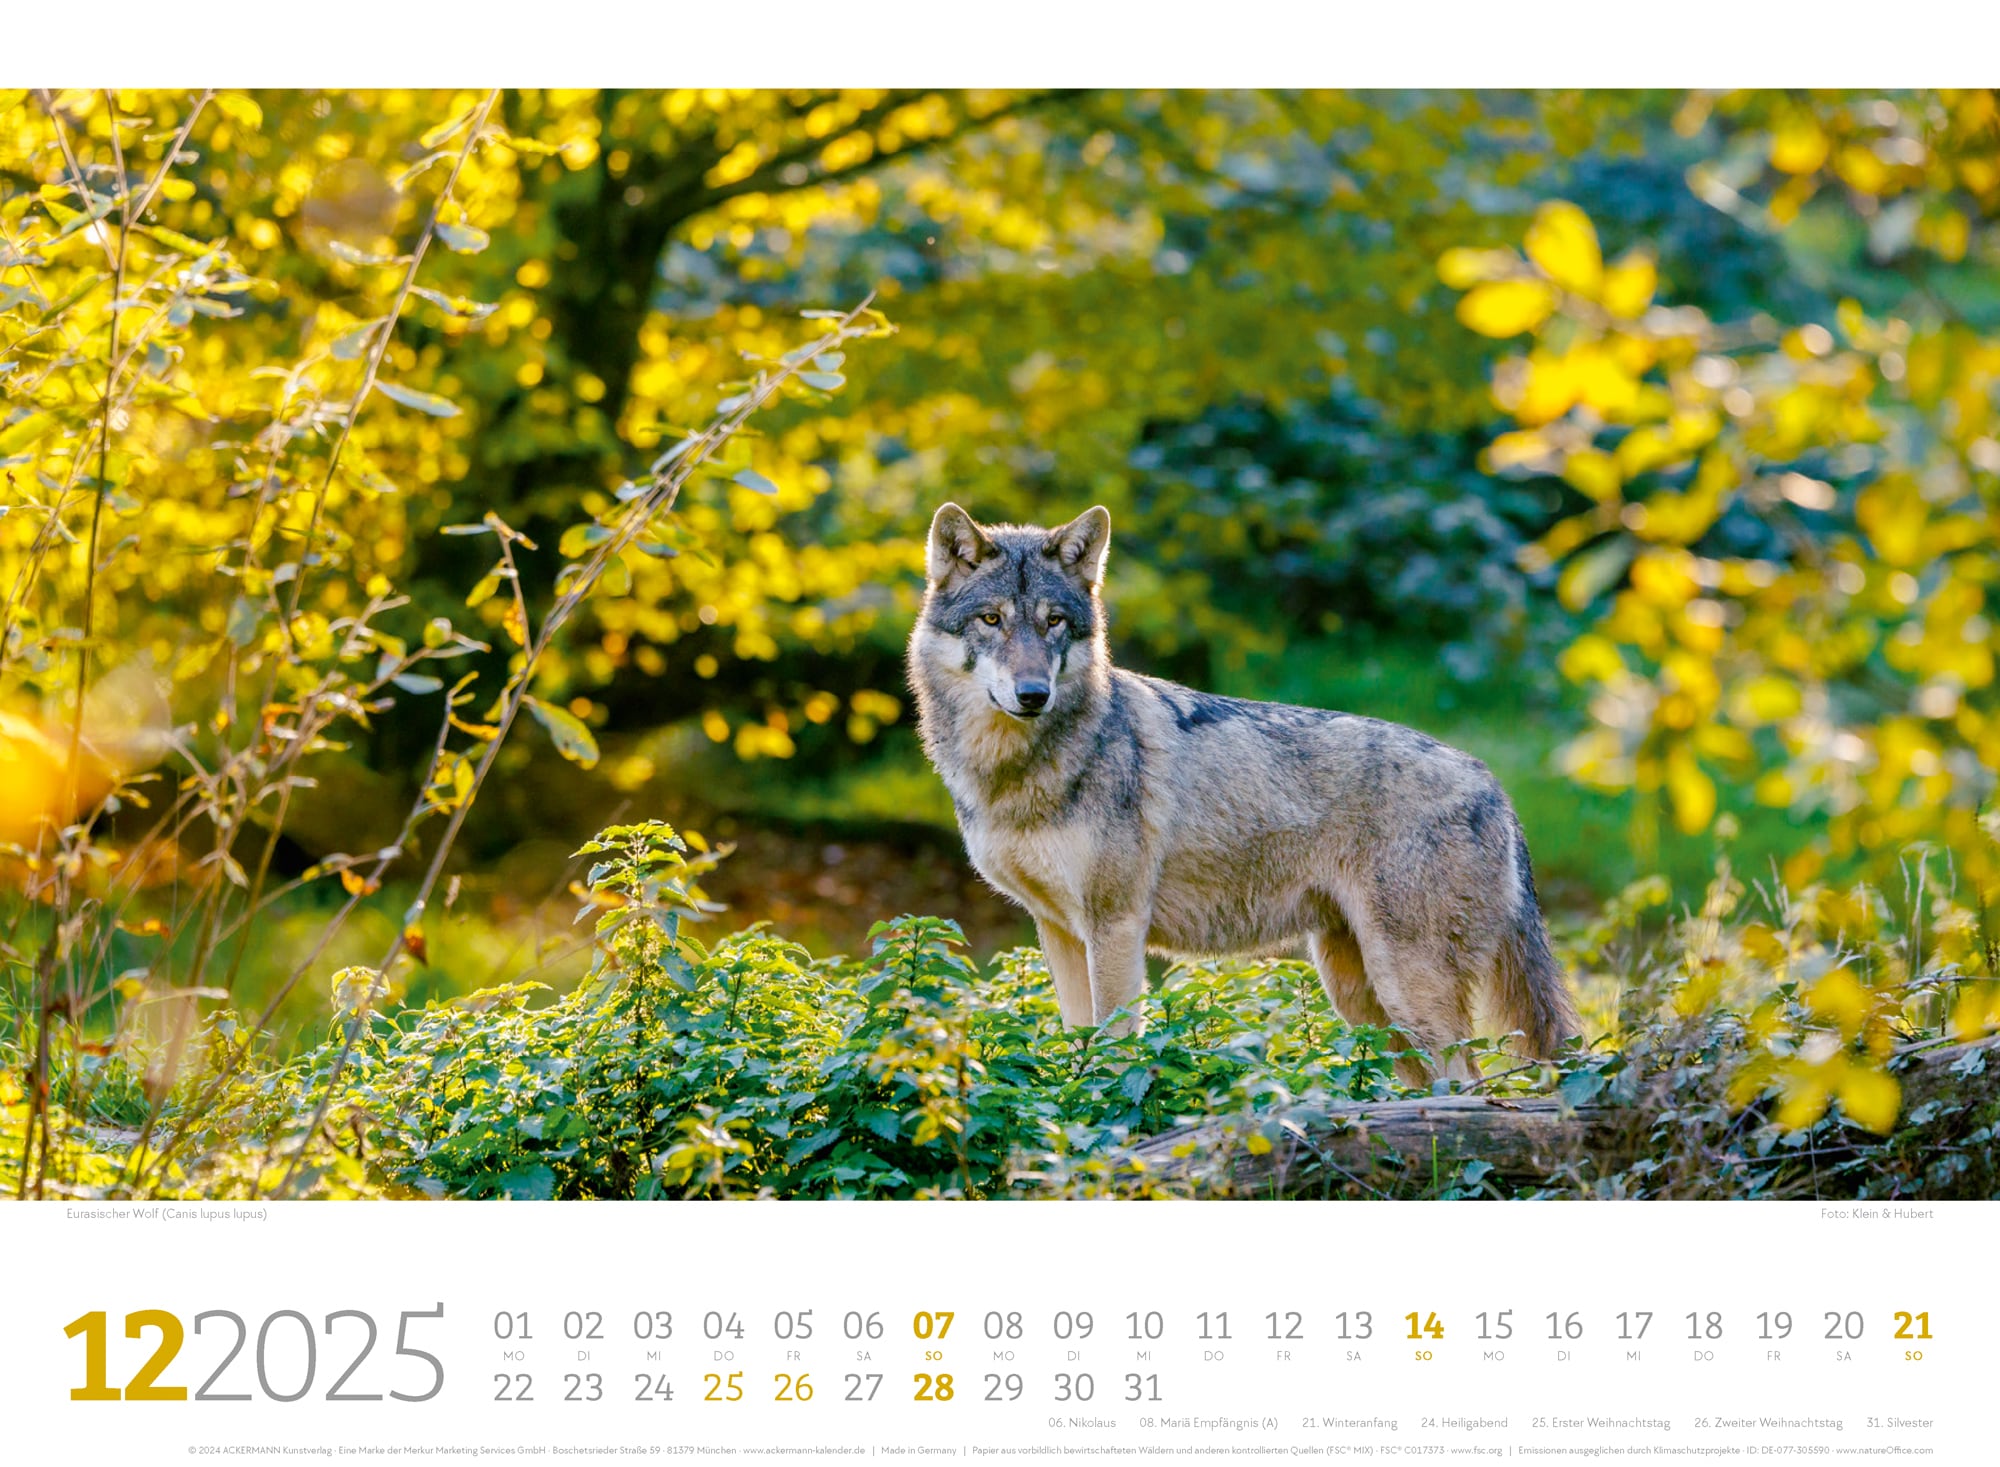 Ackermann Calendar Forest Animals 2025 - Inside View 12